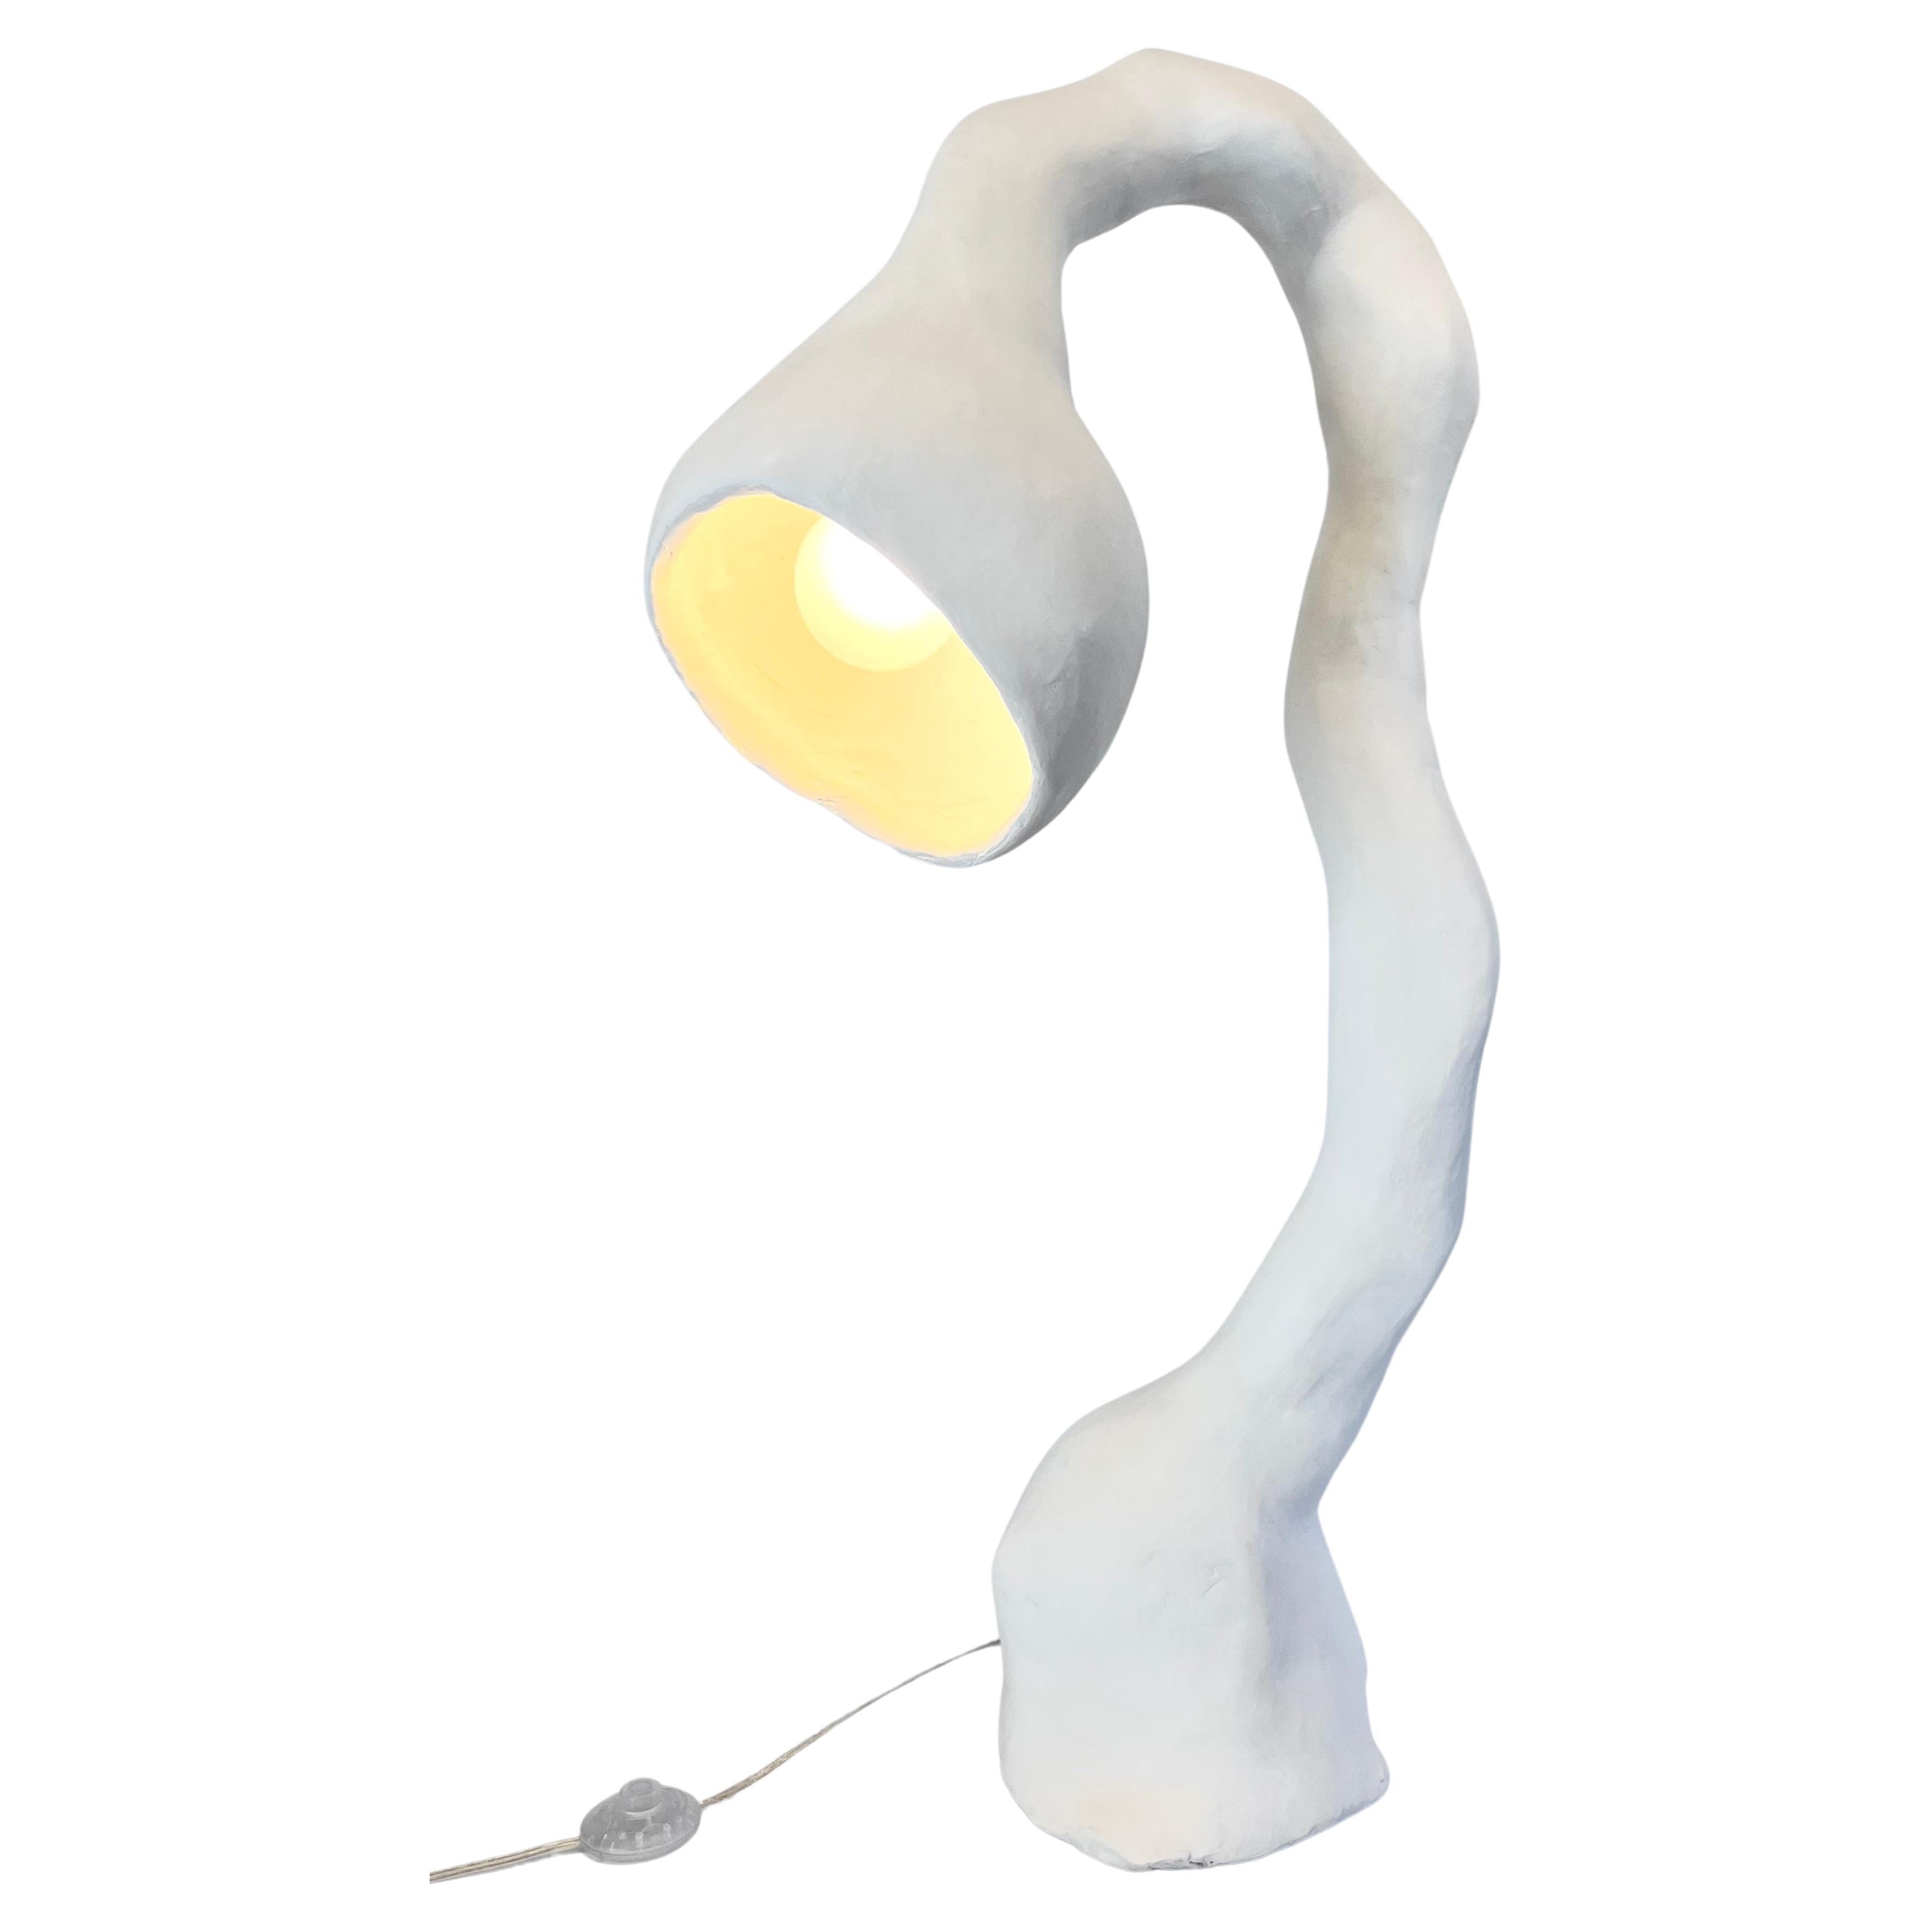 Lampadaire biomorphique N.5 de Studio Chora, lumière sur pied, pierre blanche, en stock